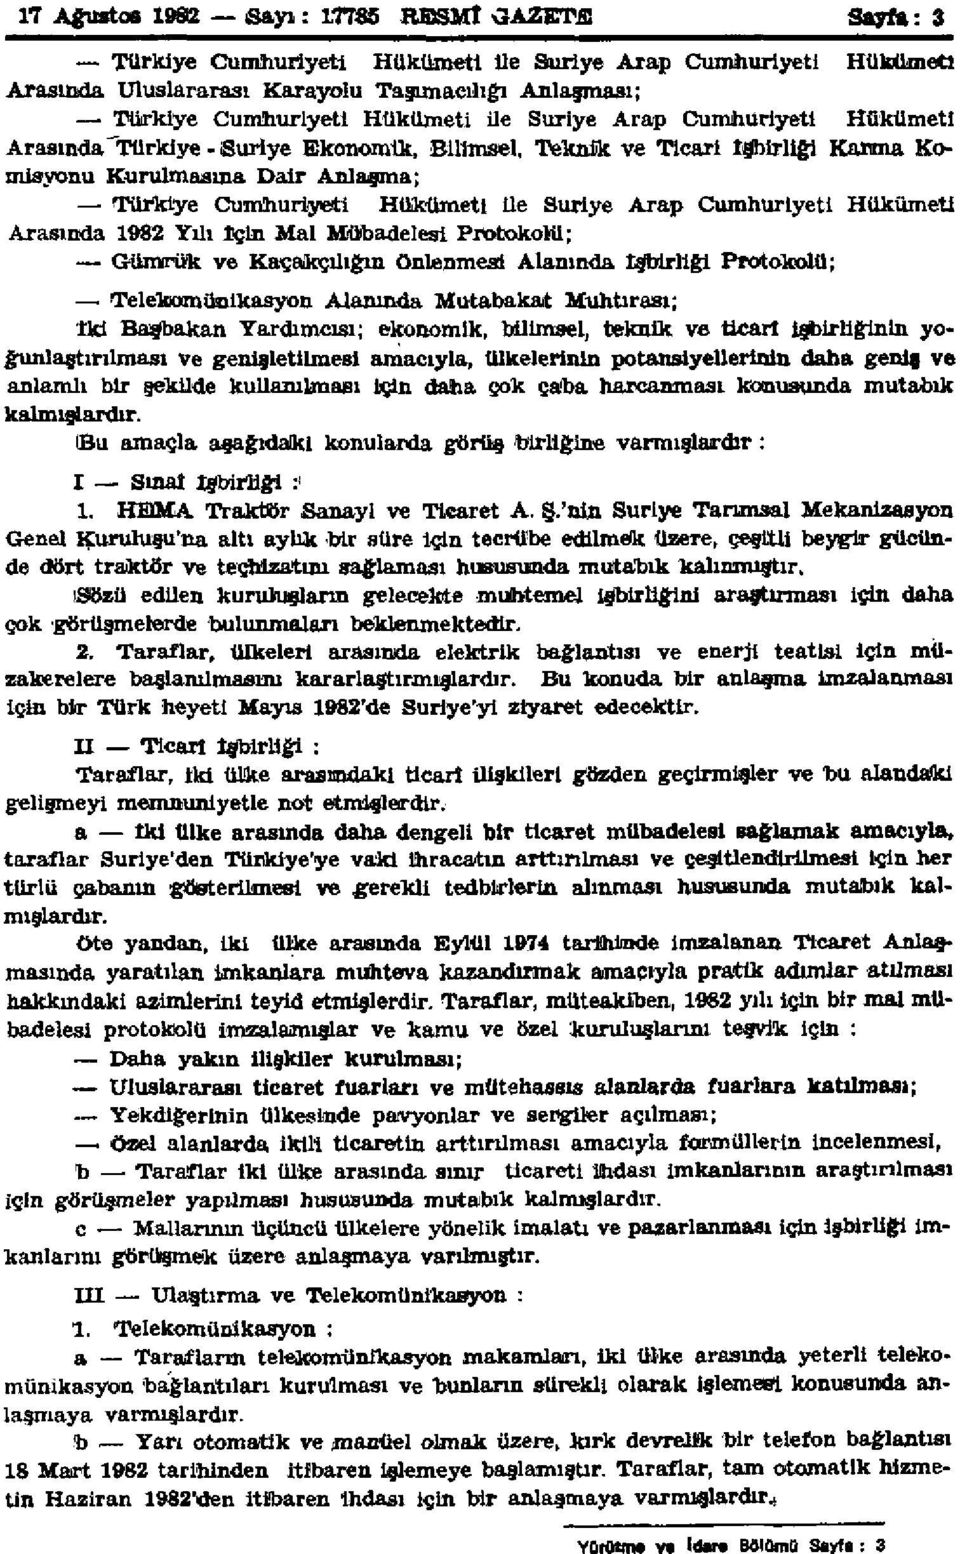 Cumhuriyeti Hükümeti Arasında 1982 Yılı İçin Mal Mübadelesi Protokolü; Gümrük ve Kaçakçılığın önlenmesi Alanında İşbirliği Protokolü; Telekomünikasyon Alanında Mutabakat Muhtırası; İki Başbakan